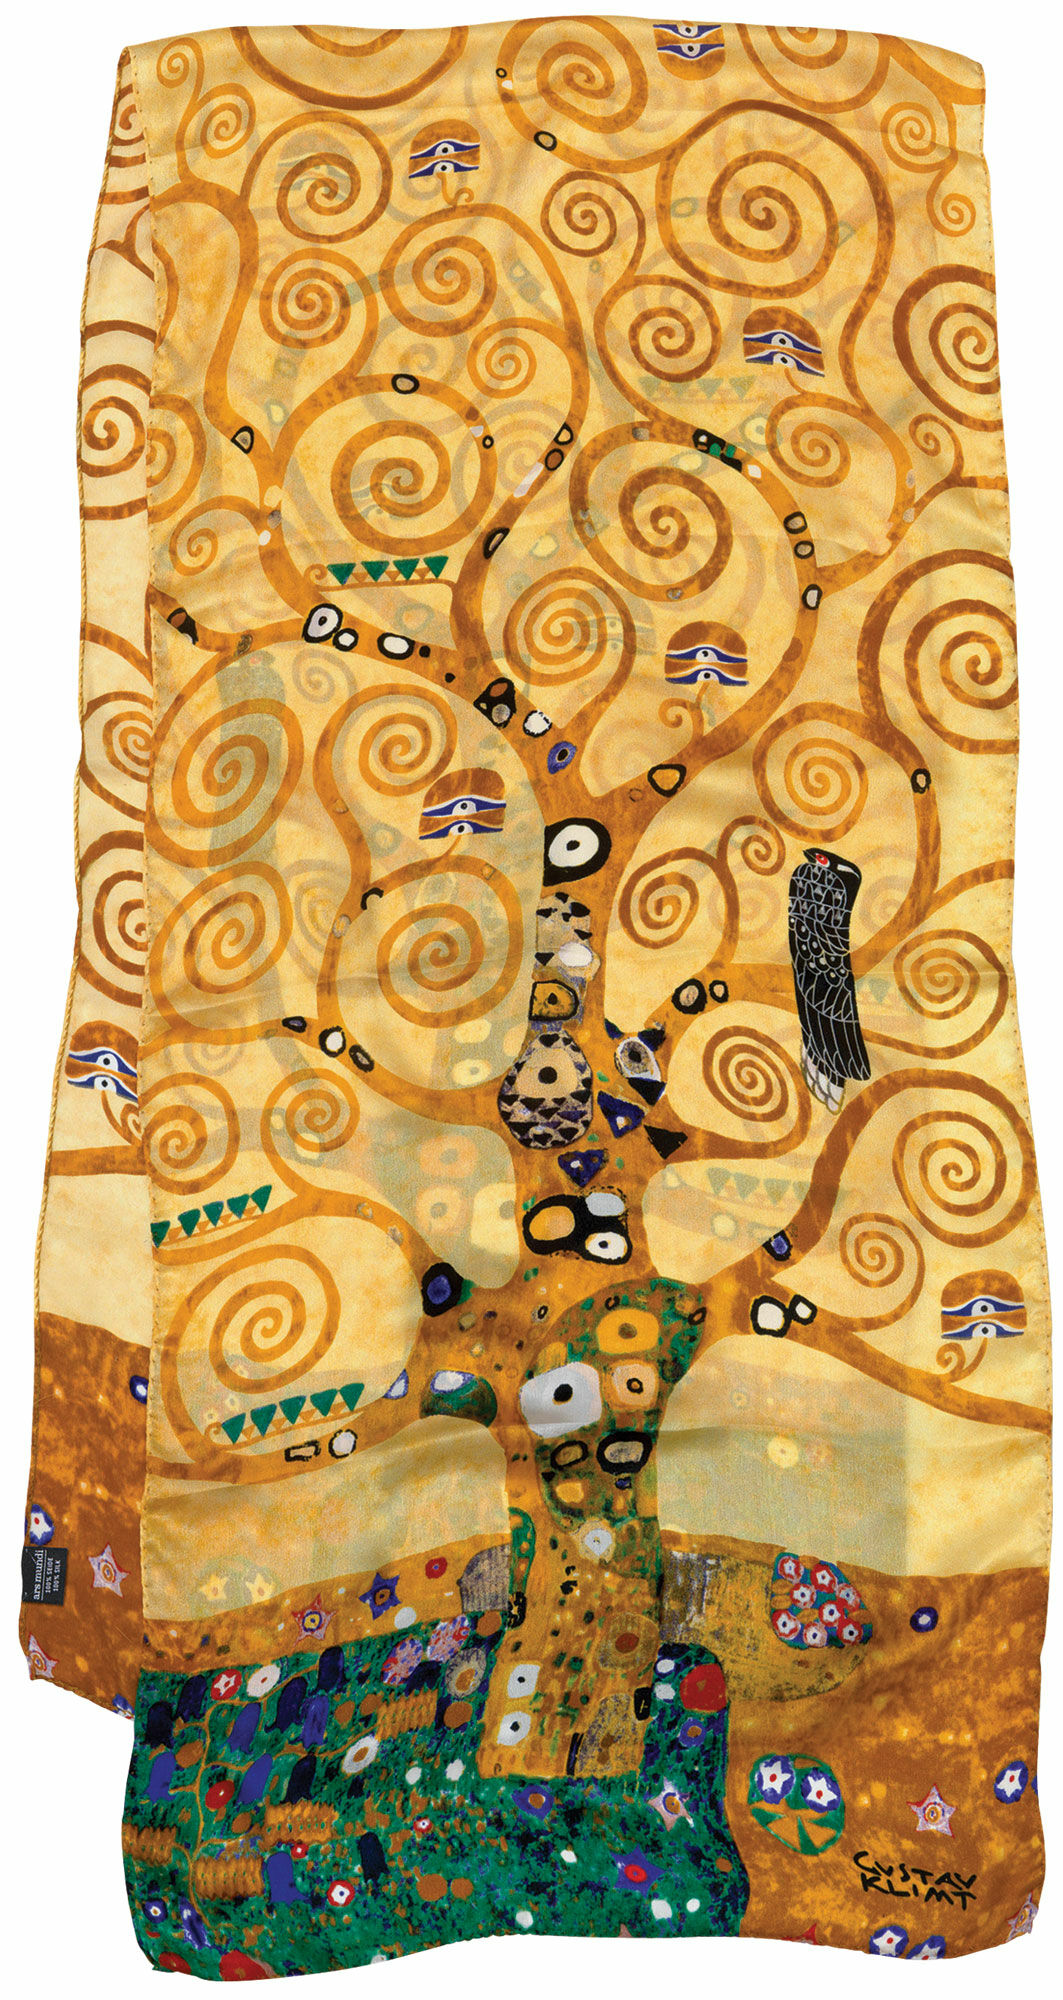 Seidenschal "Lebensbaum" von Gustav Klimt